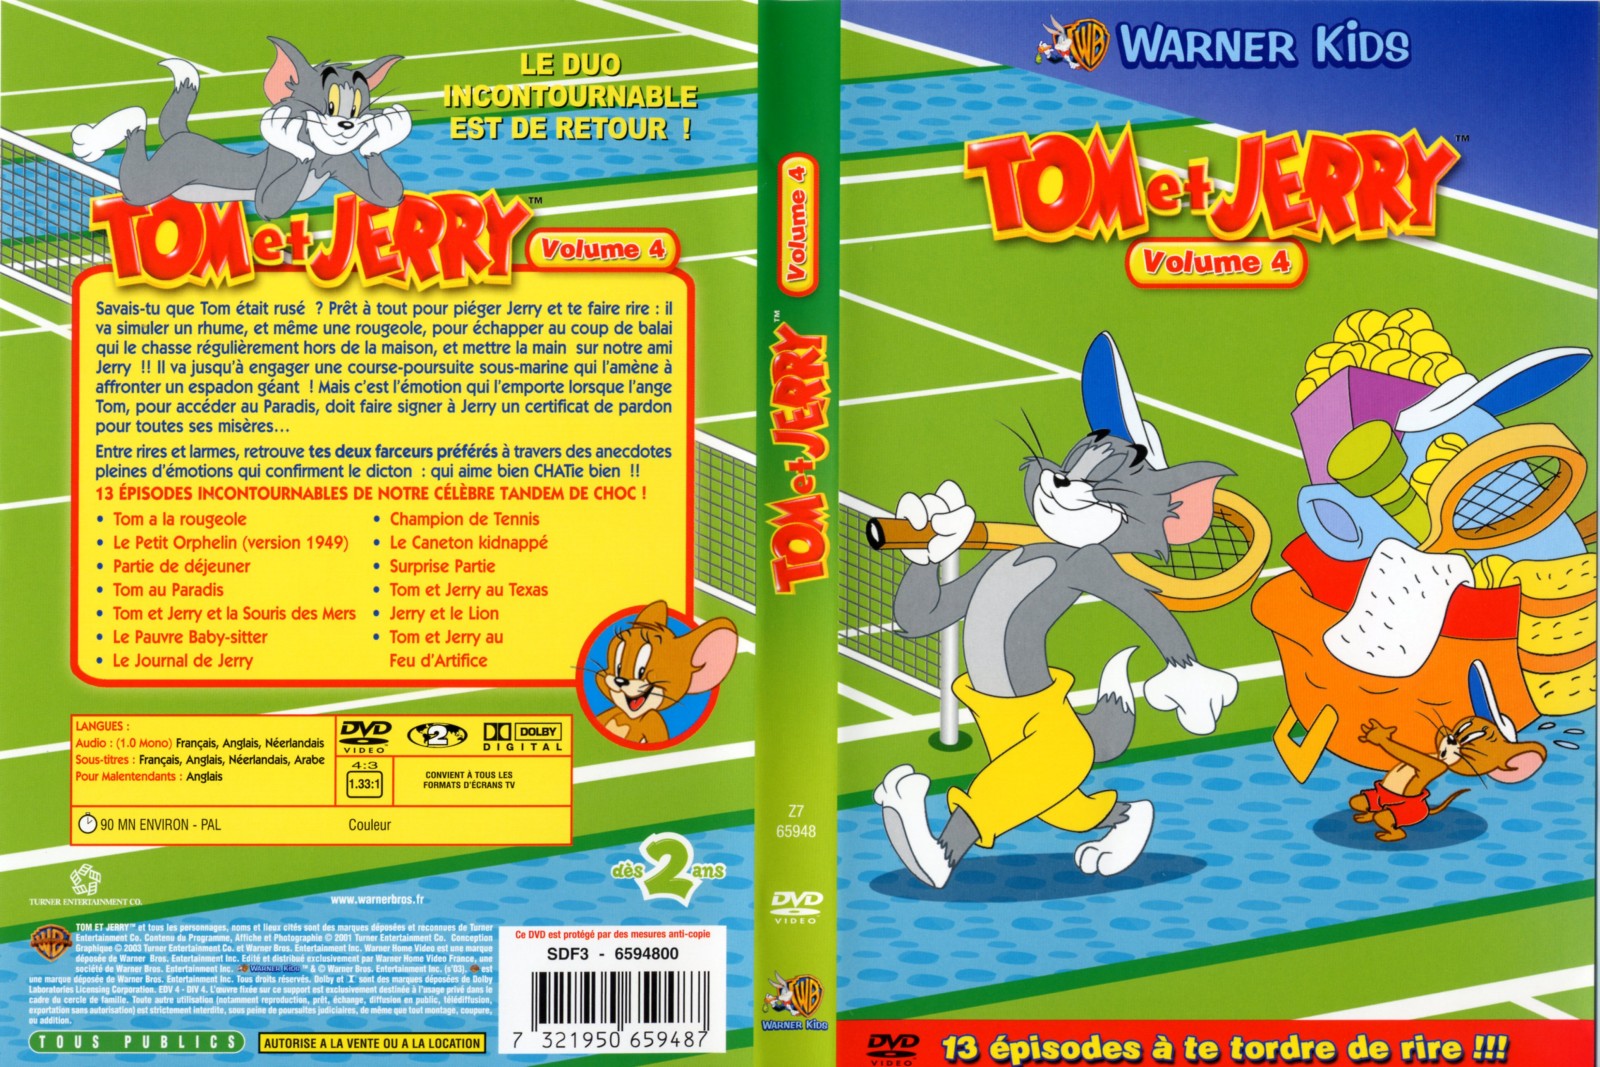 Jaquette DVD Tom et Jerry vol 4